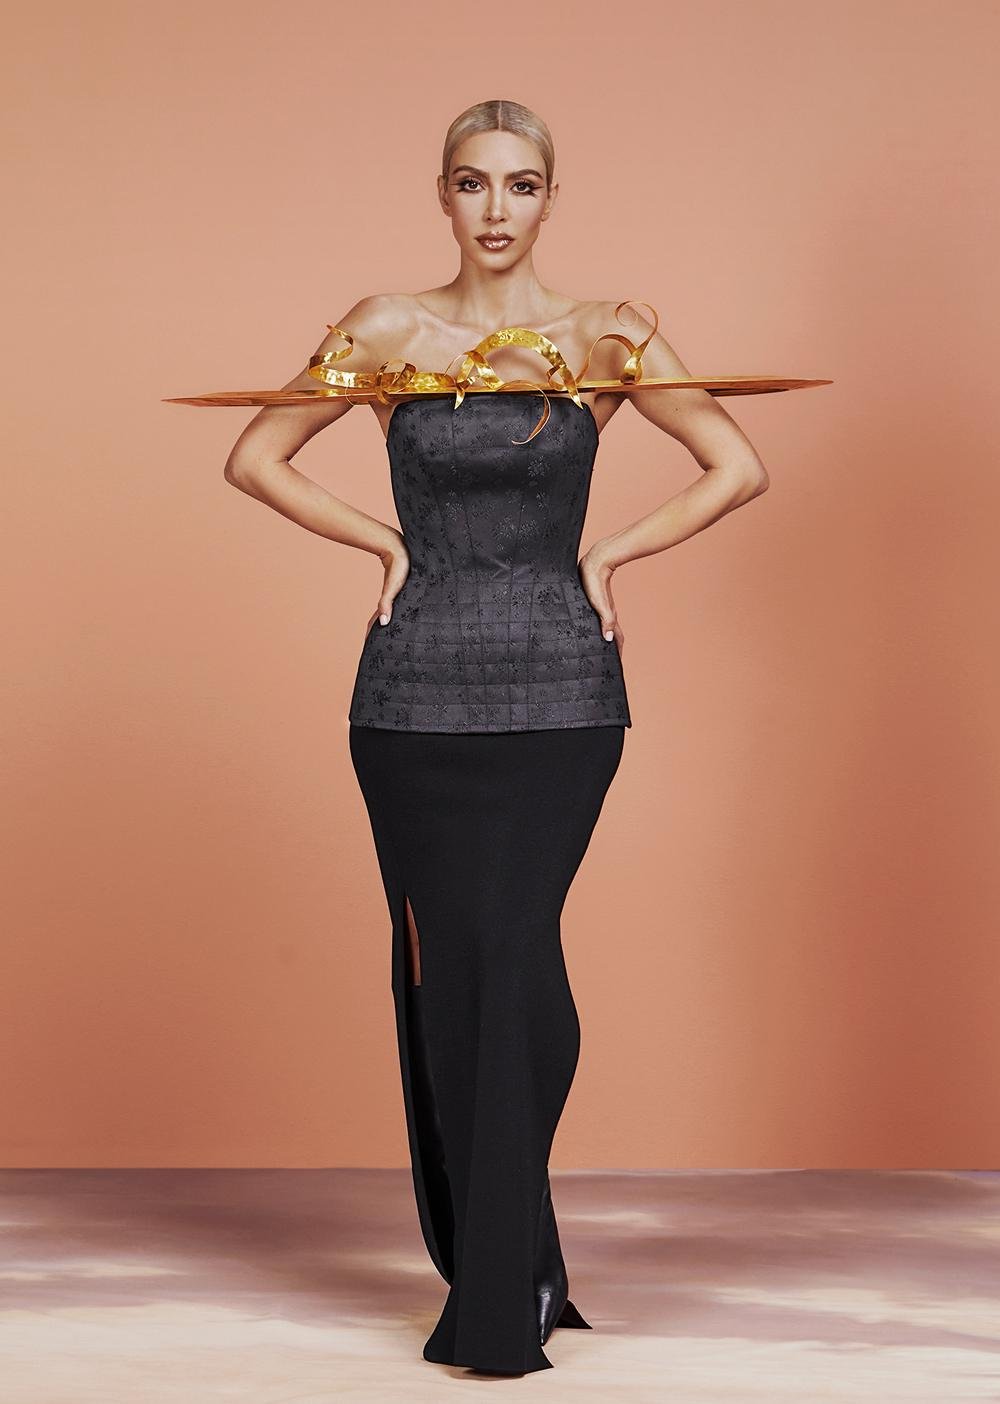 Изменившаяся до неузнаваемости, Ким Кардашьян красуется на обложке журнала Allure US